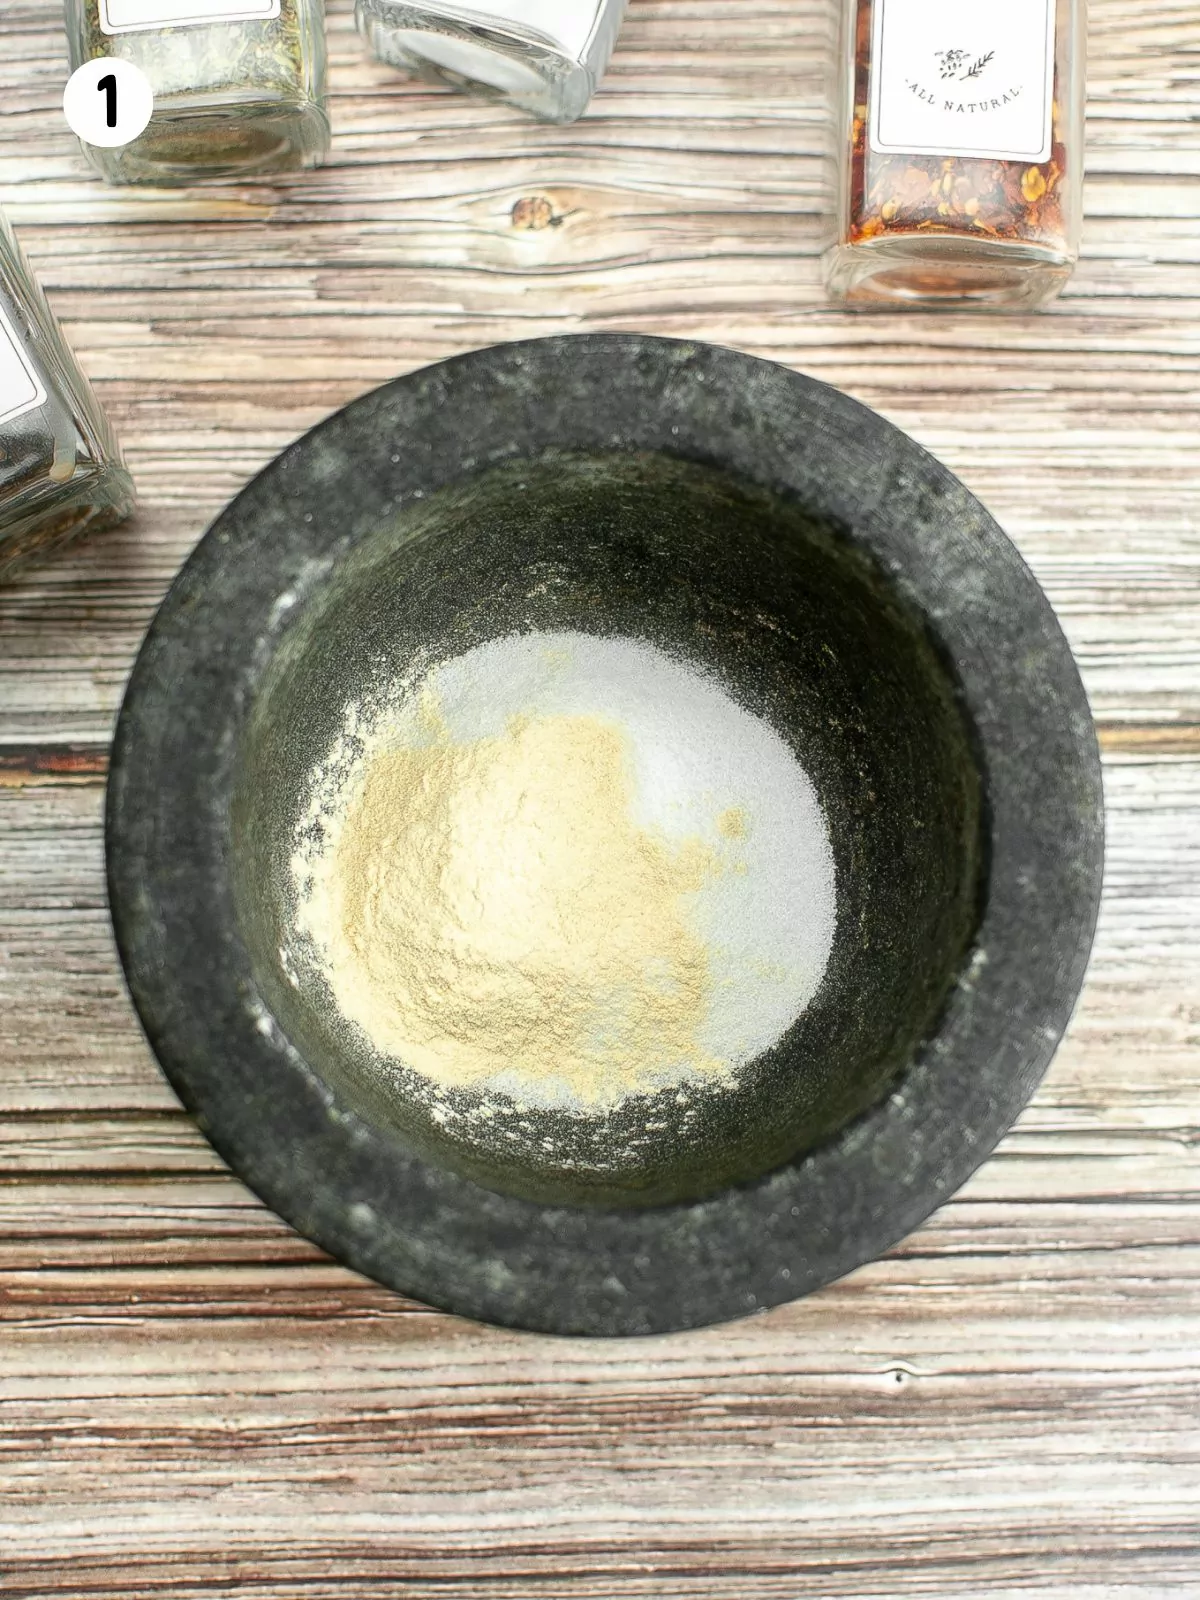 garlic powder and salt in bowl.